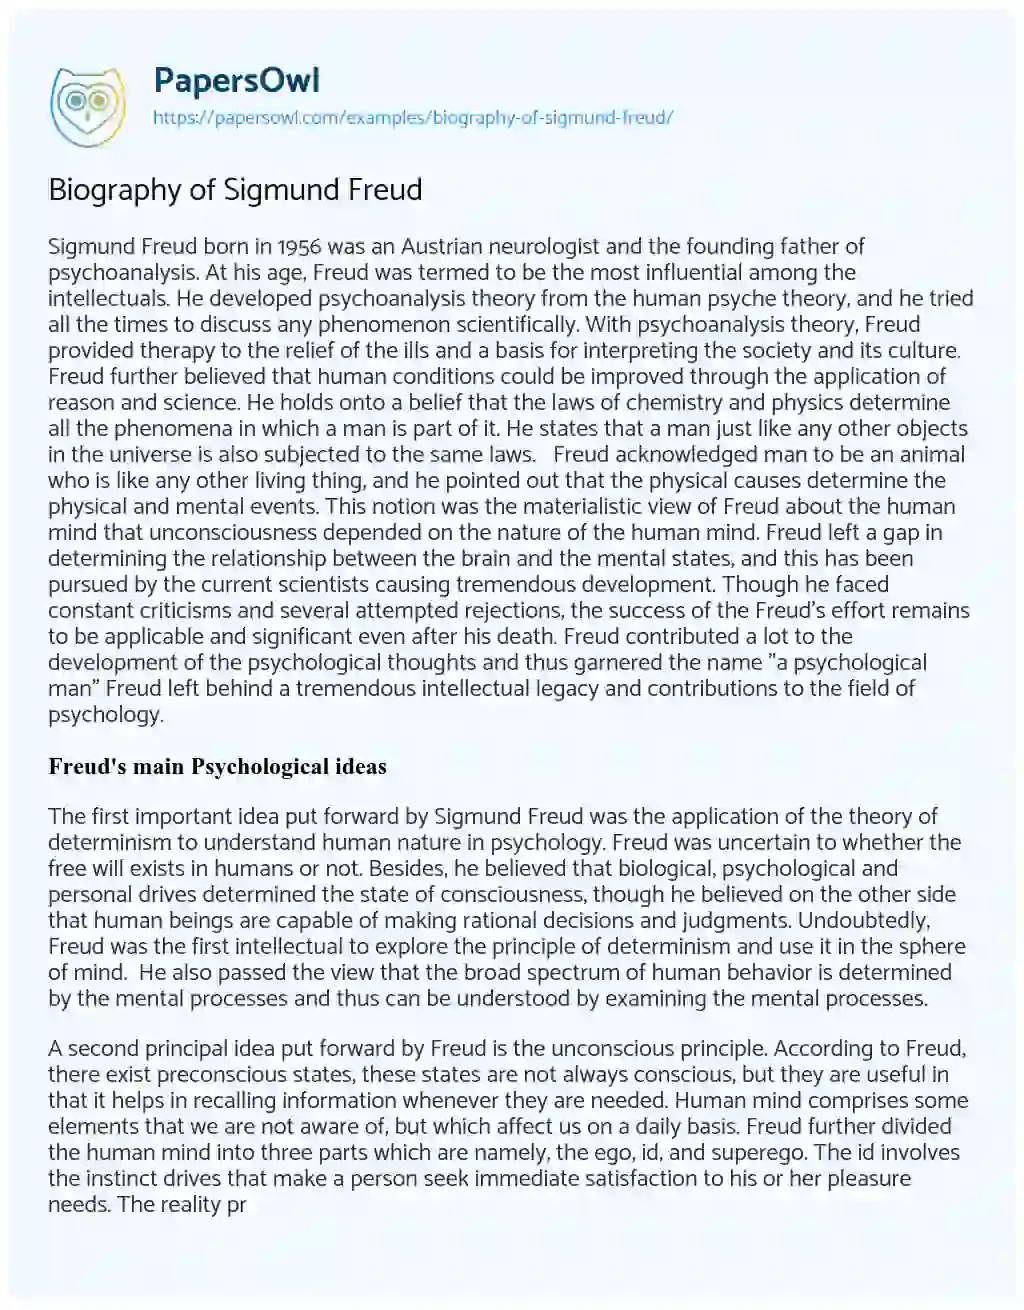 Essay on Biography of Sigmund Freud